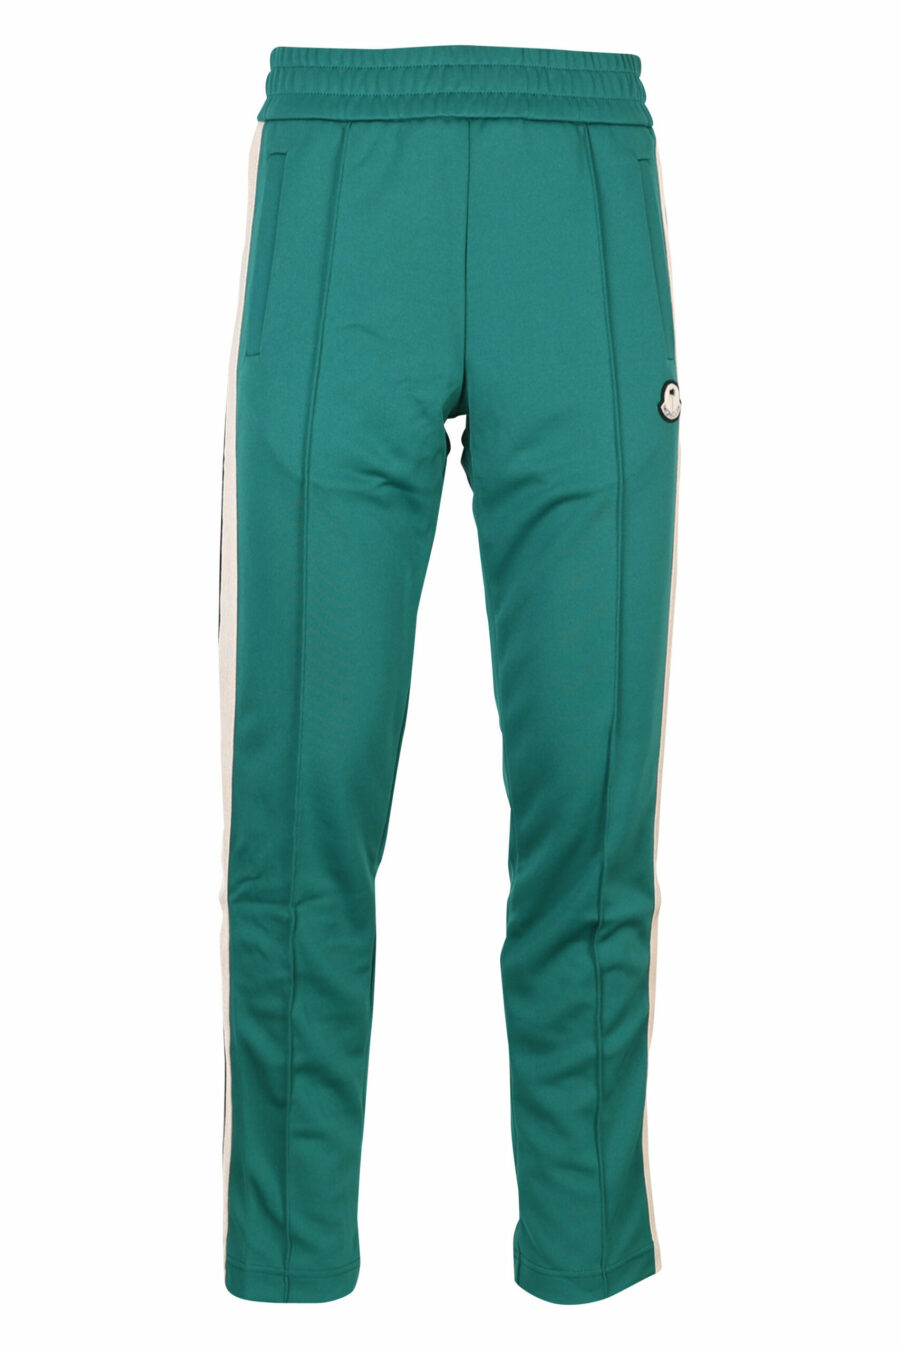 Pantalón de chándal verde con franjas blancas laterales - 8057151109306 scaled